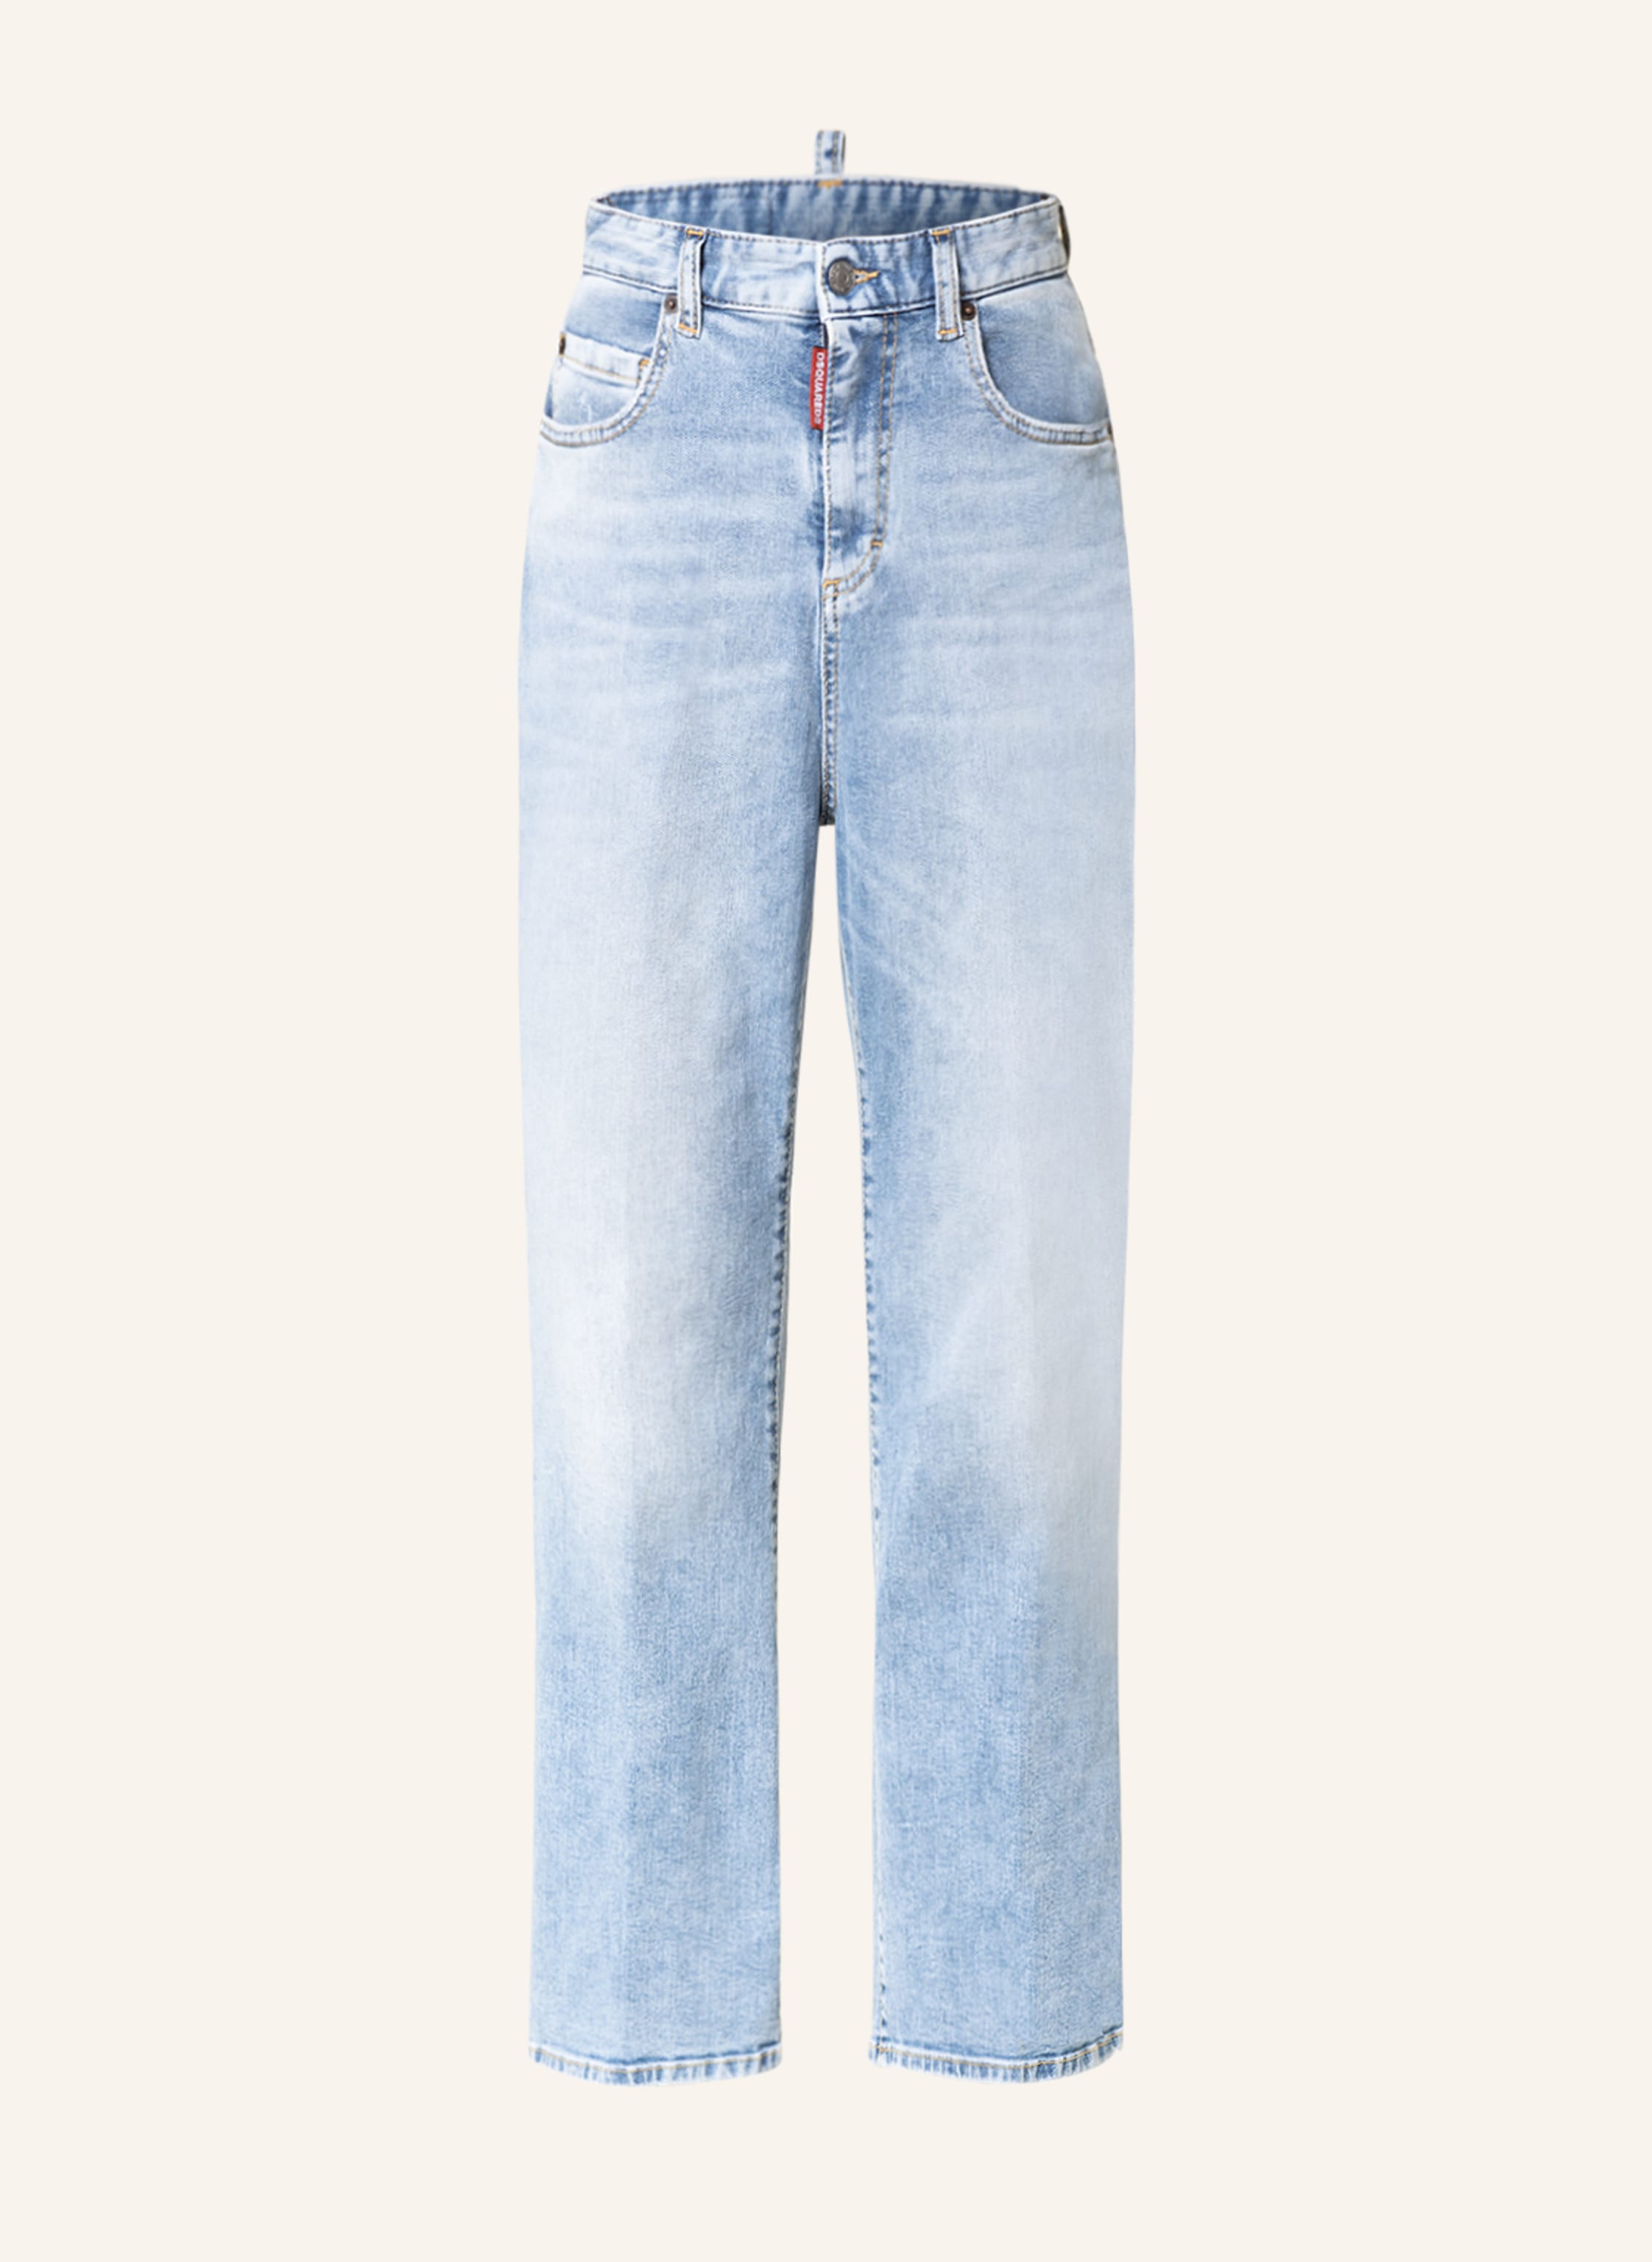 DSQUARED2 Flared jeans HONEY in 470 blue navy | Breuninger